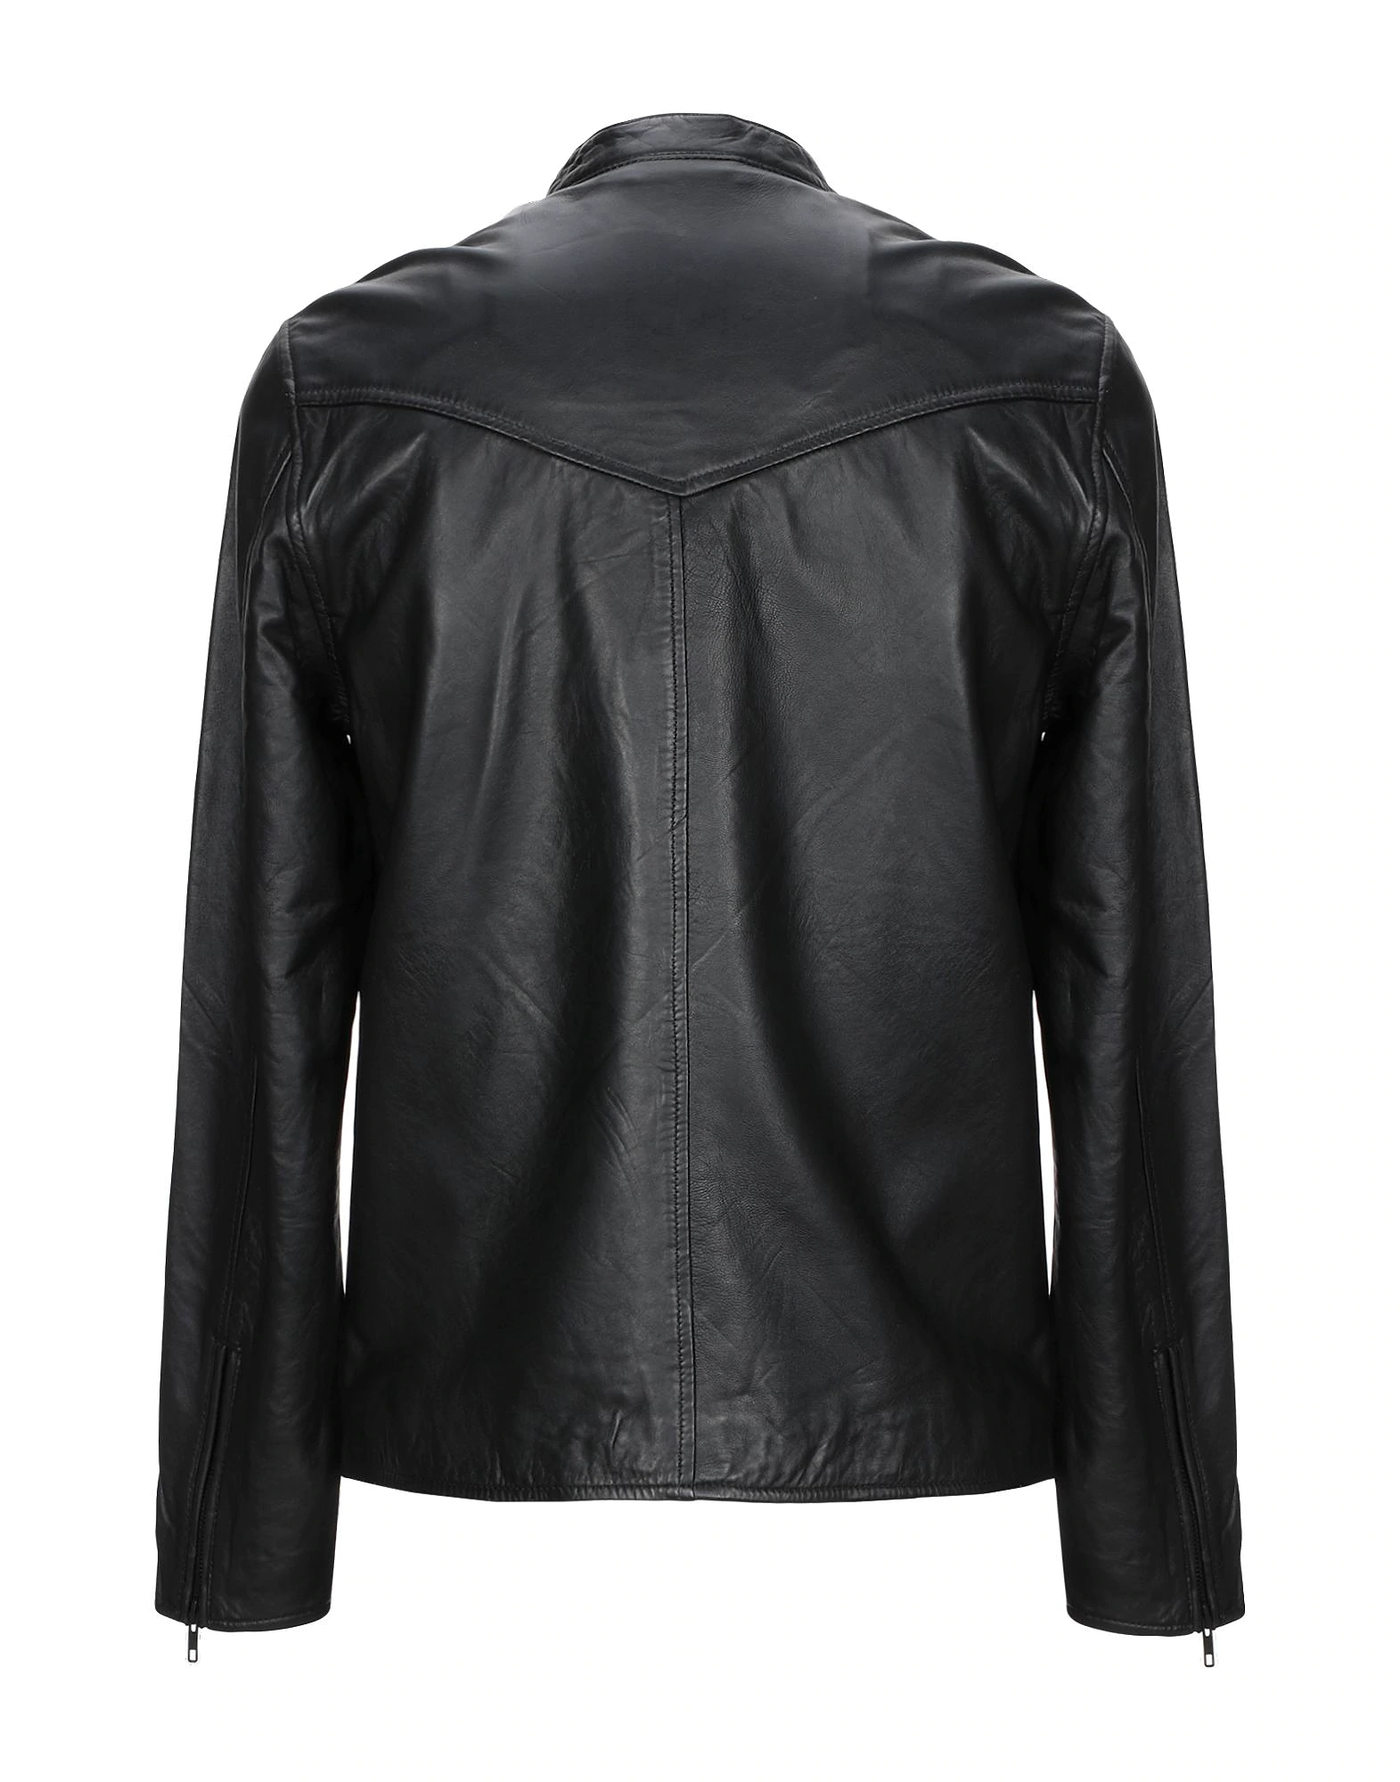 Black Bomber Leather Jacket For Men